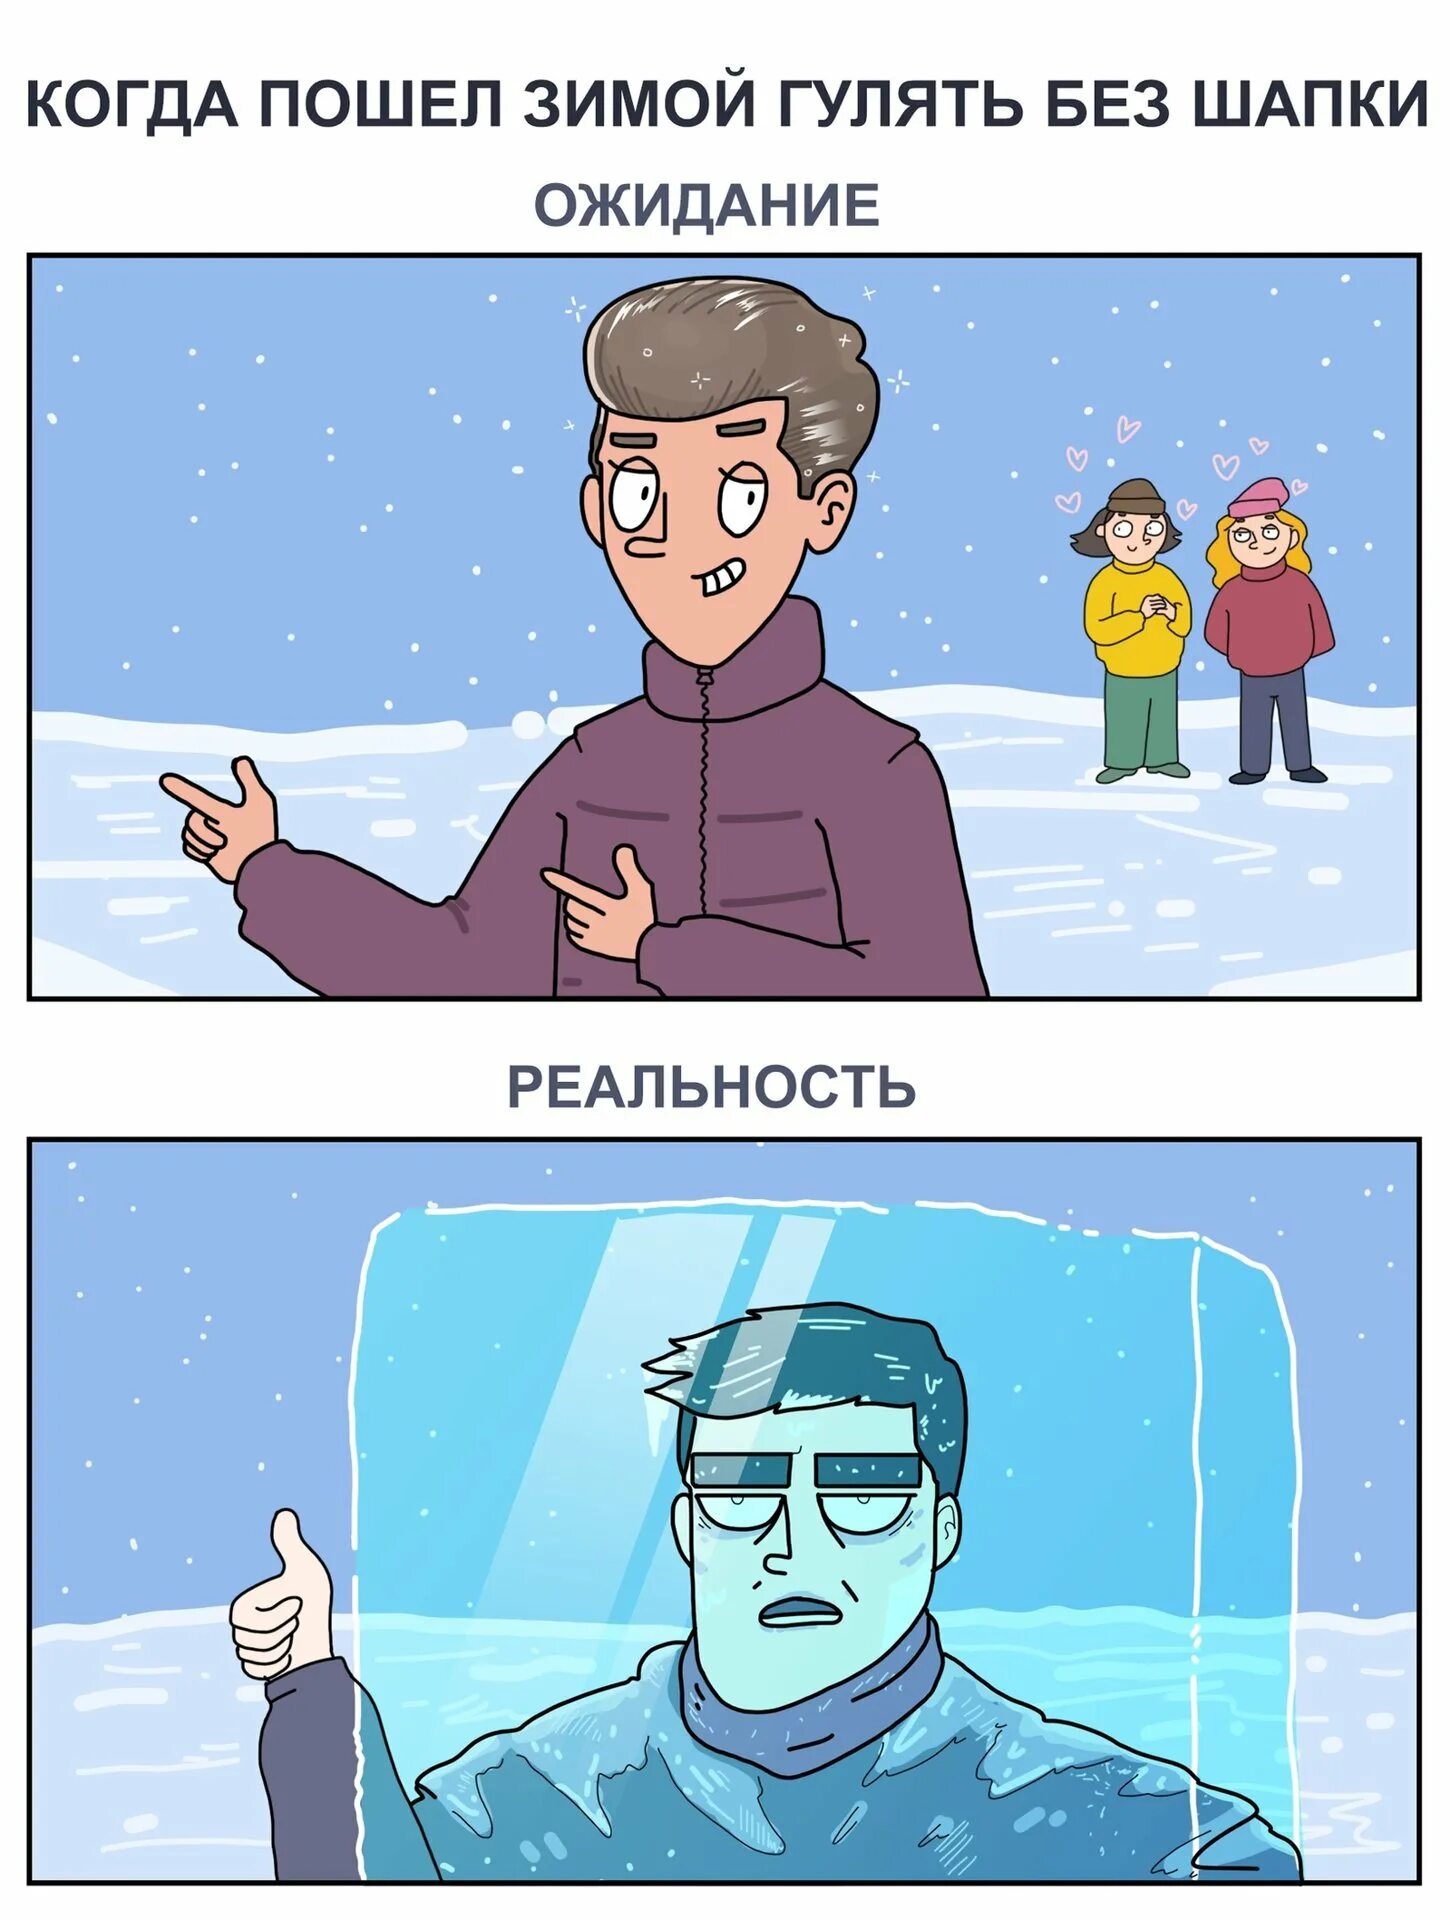 Мемы про зиму. Комиксы про зиму. Зима мелом. Смешные комиксы про зиму. Когда можно ходить без шапки